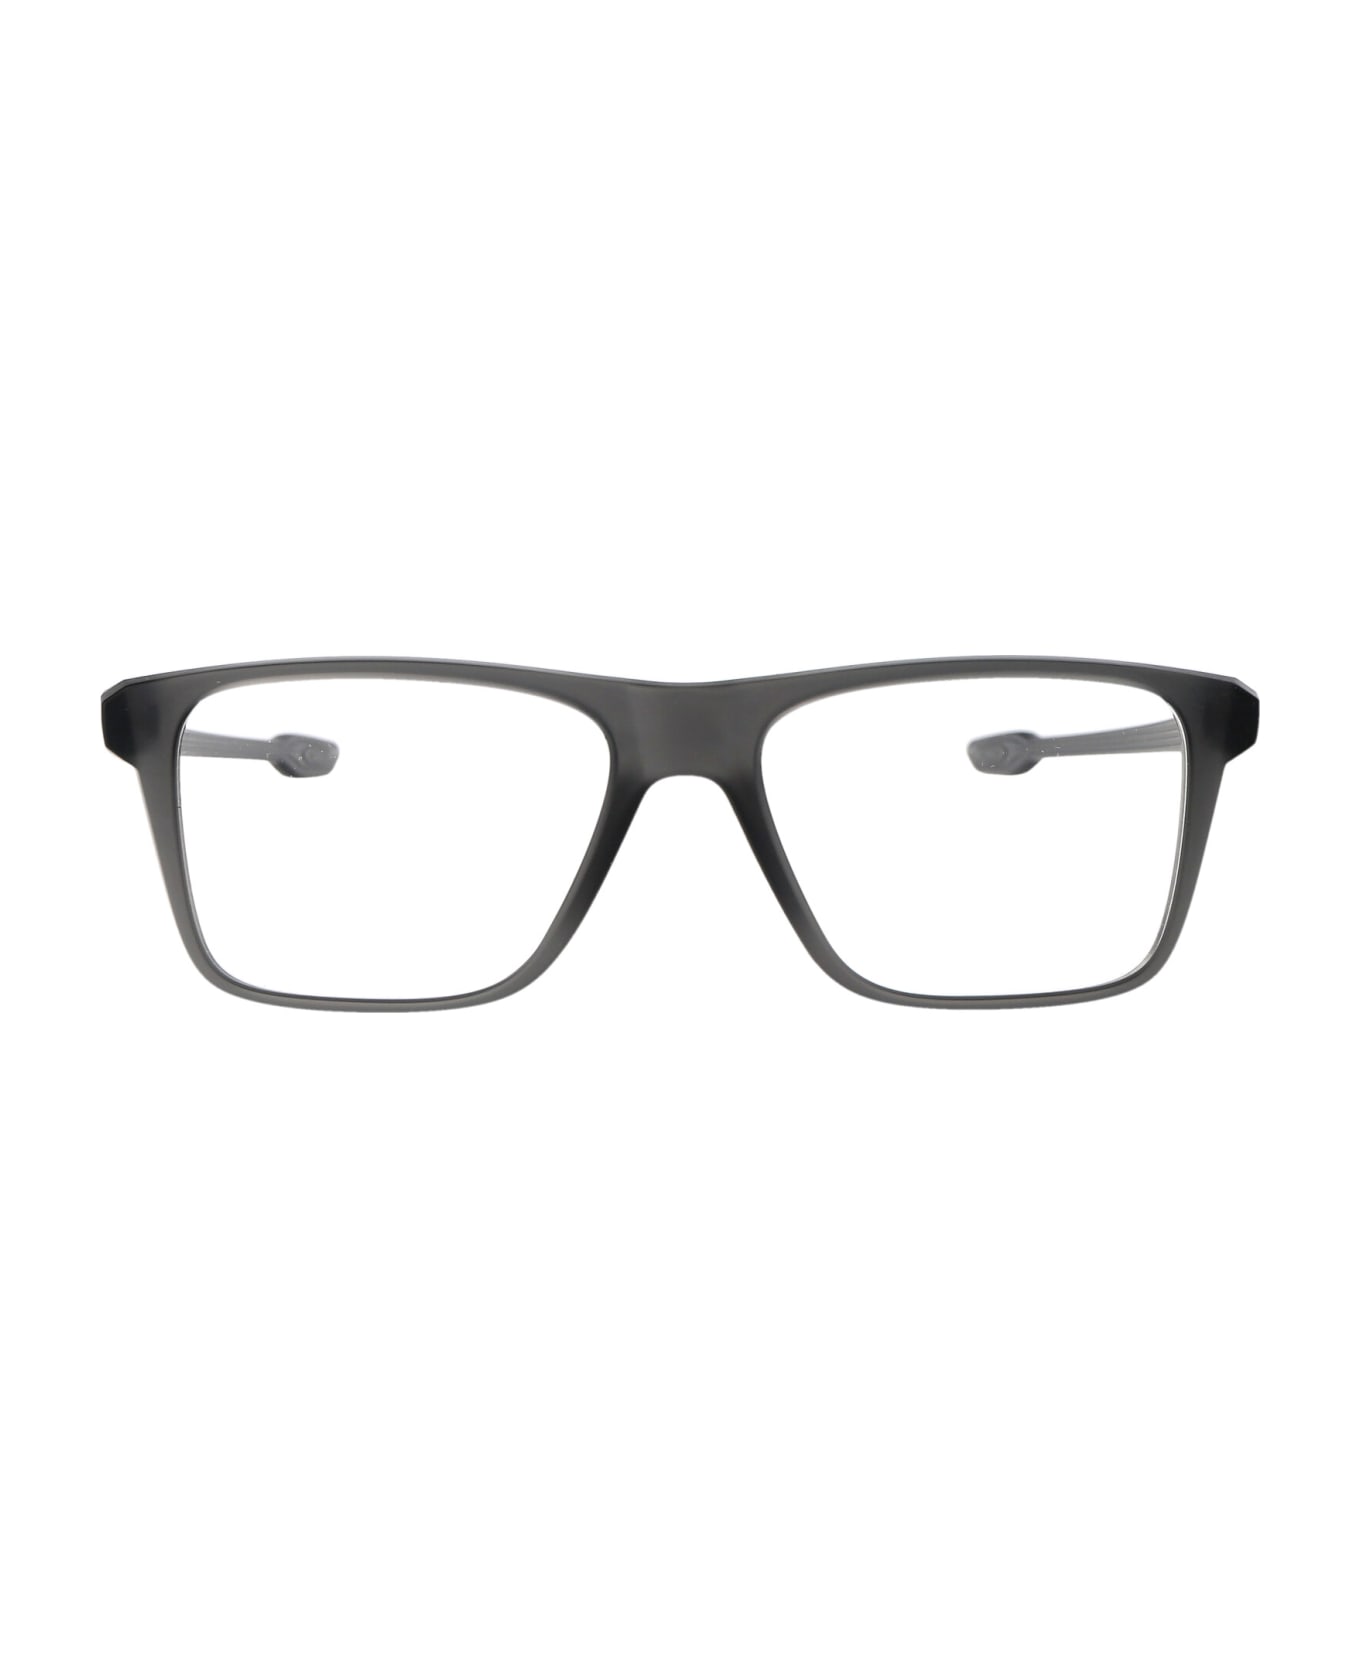 Oakley Bunt Glasses - 802602 SATIN GREY SMOKE DEMO LENS